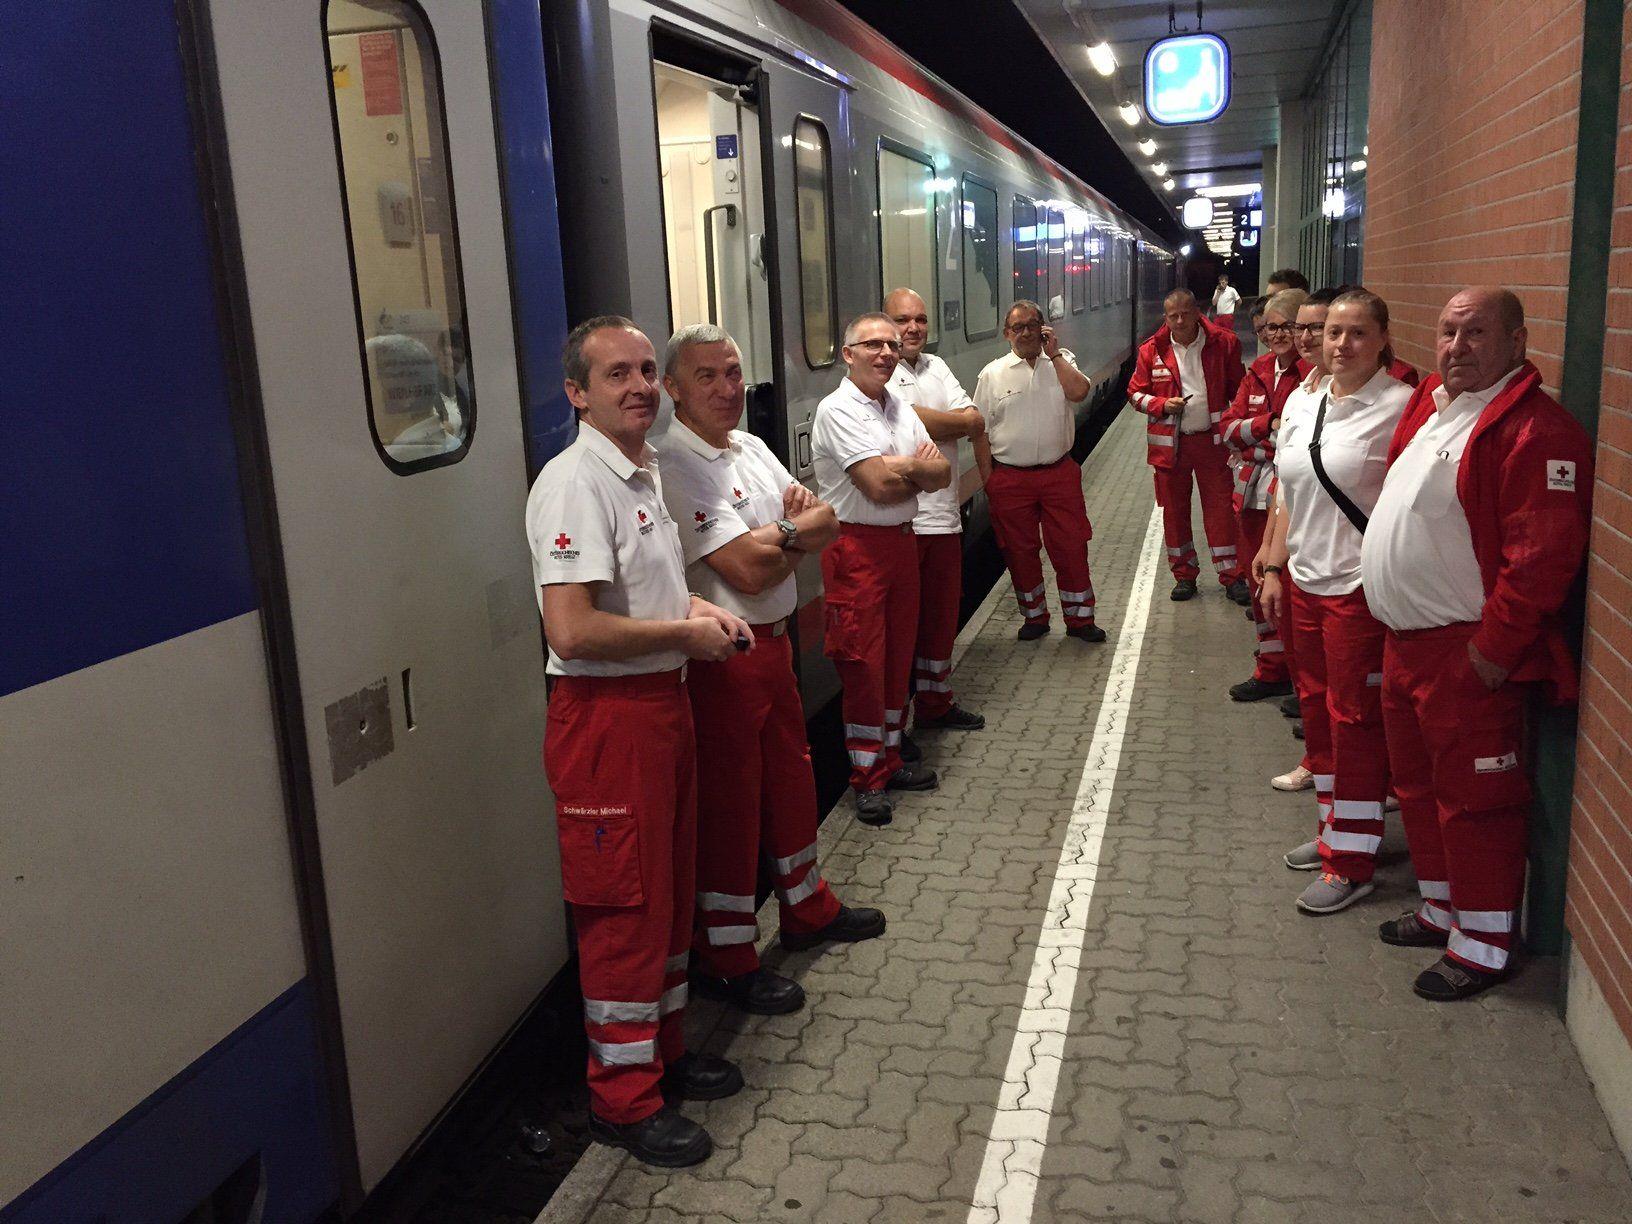 Am Donnerstagabend werden 24 ehrenamtliche Vorarlberger Rot-Kreuz-Mitarbeiter von ihrem Einsatz in Wien zurückerwartet.